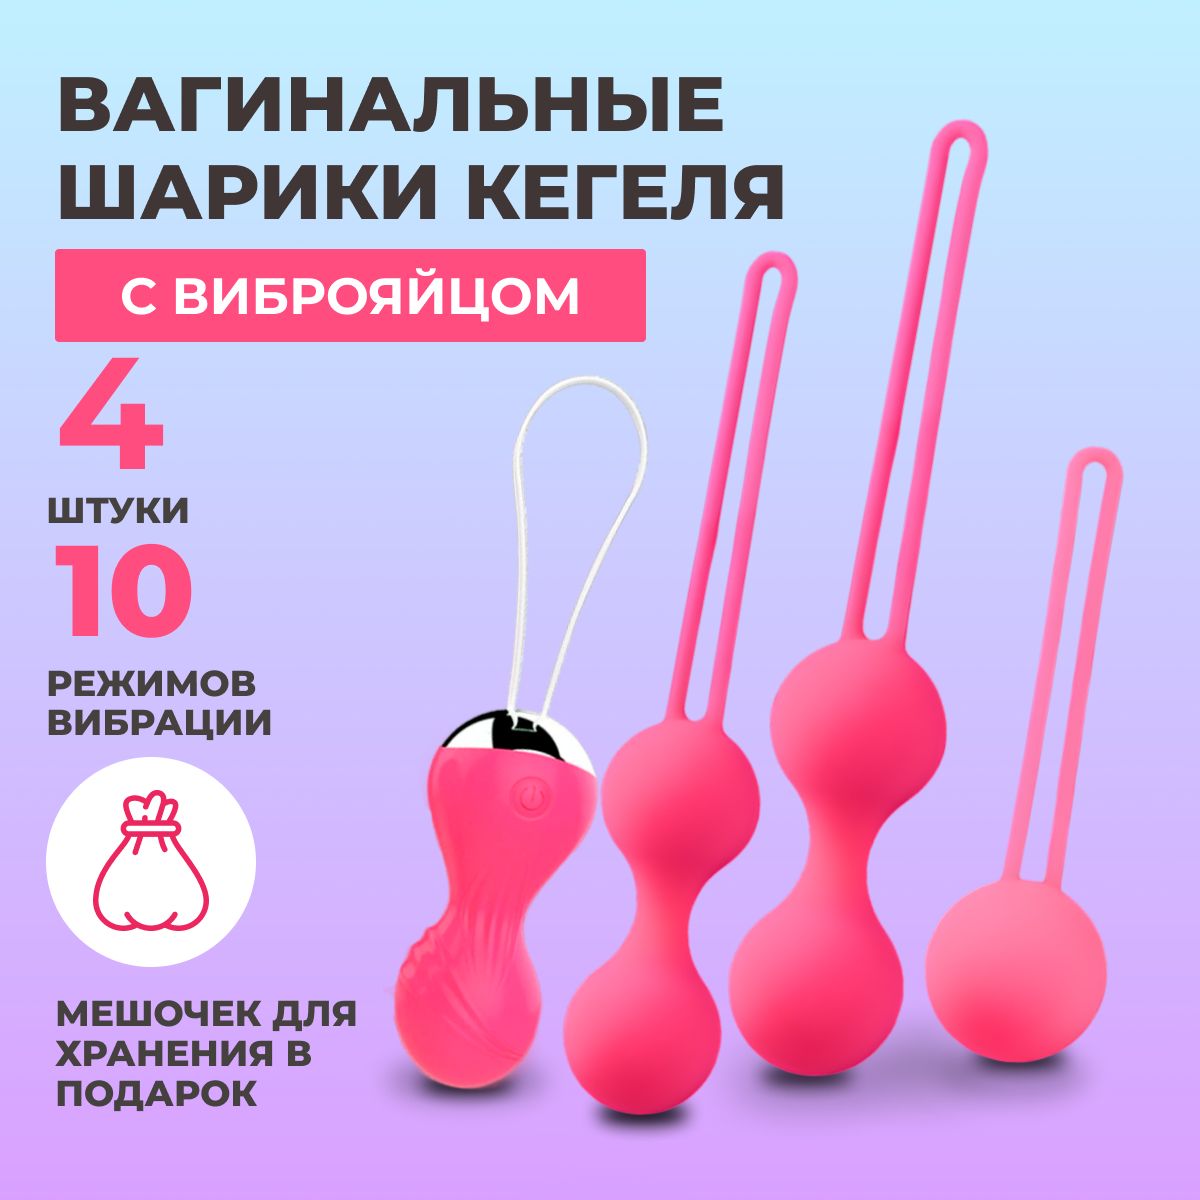 Ответы optnp.ru: про вагинальные шарики из секс-шопа!